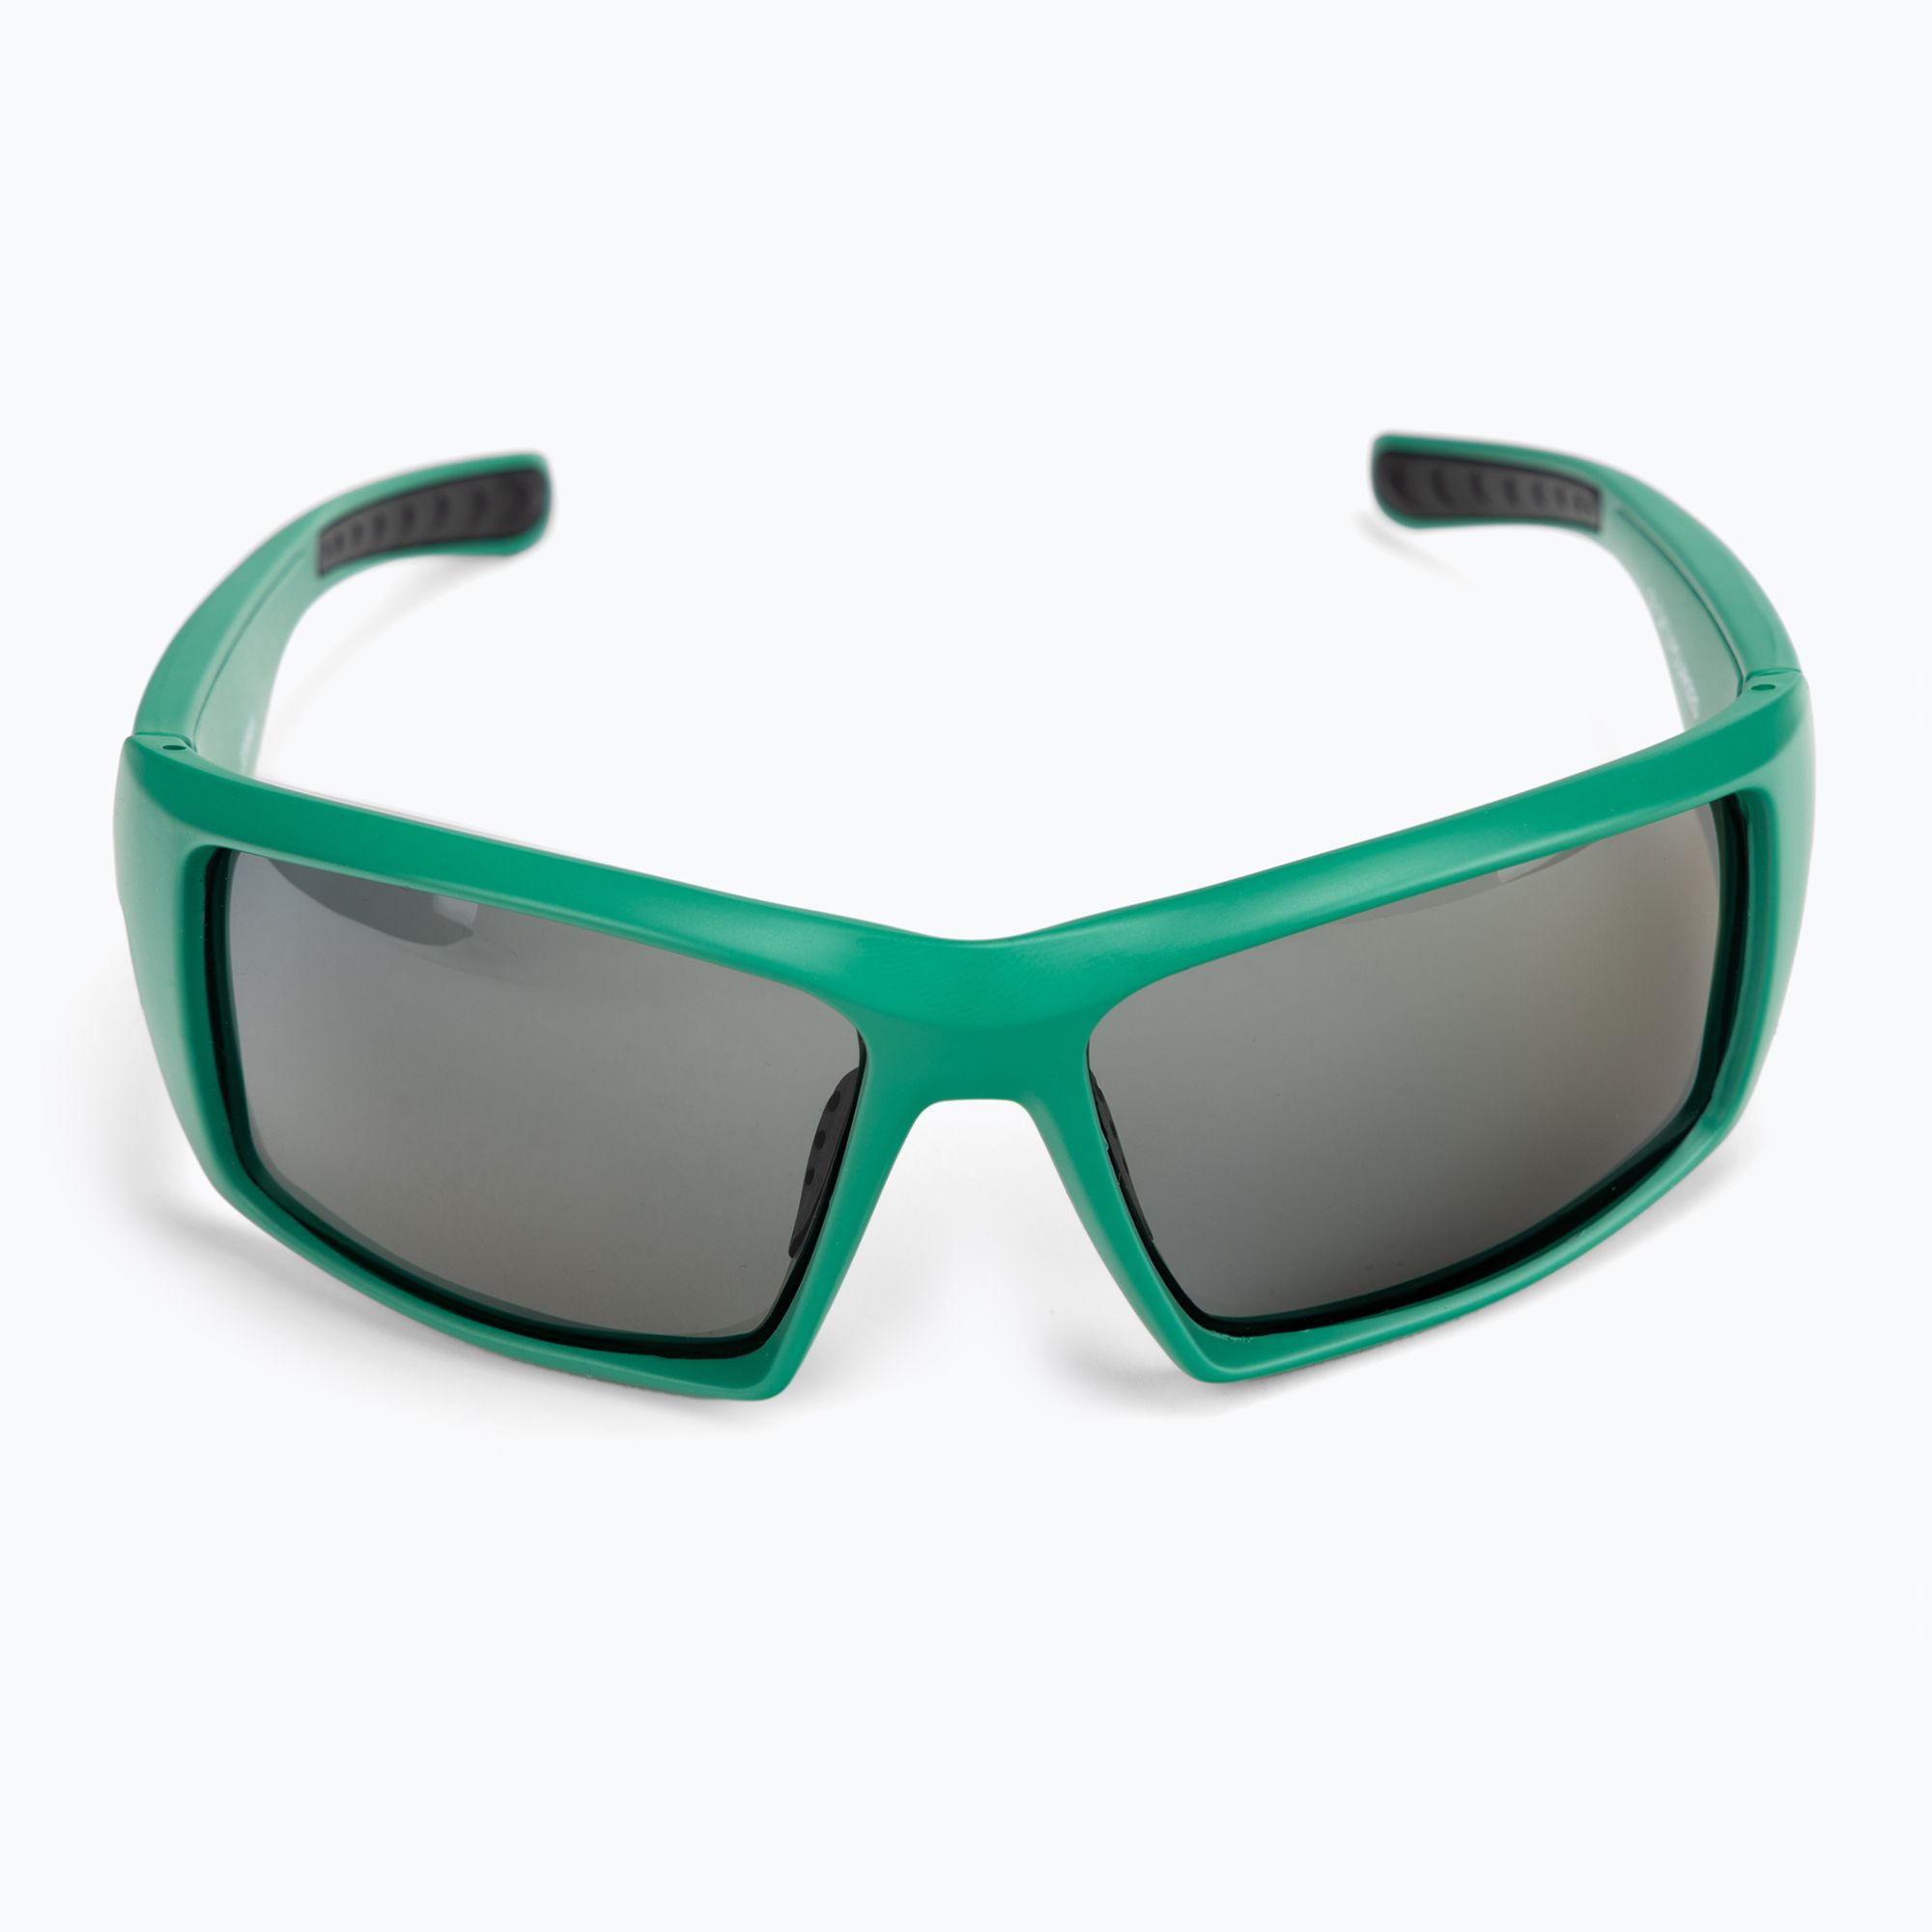 Okulary przeciwsłoneczne Ocean Sunglasses Aruba matte green/smoke zdjęcie nr 3